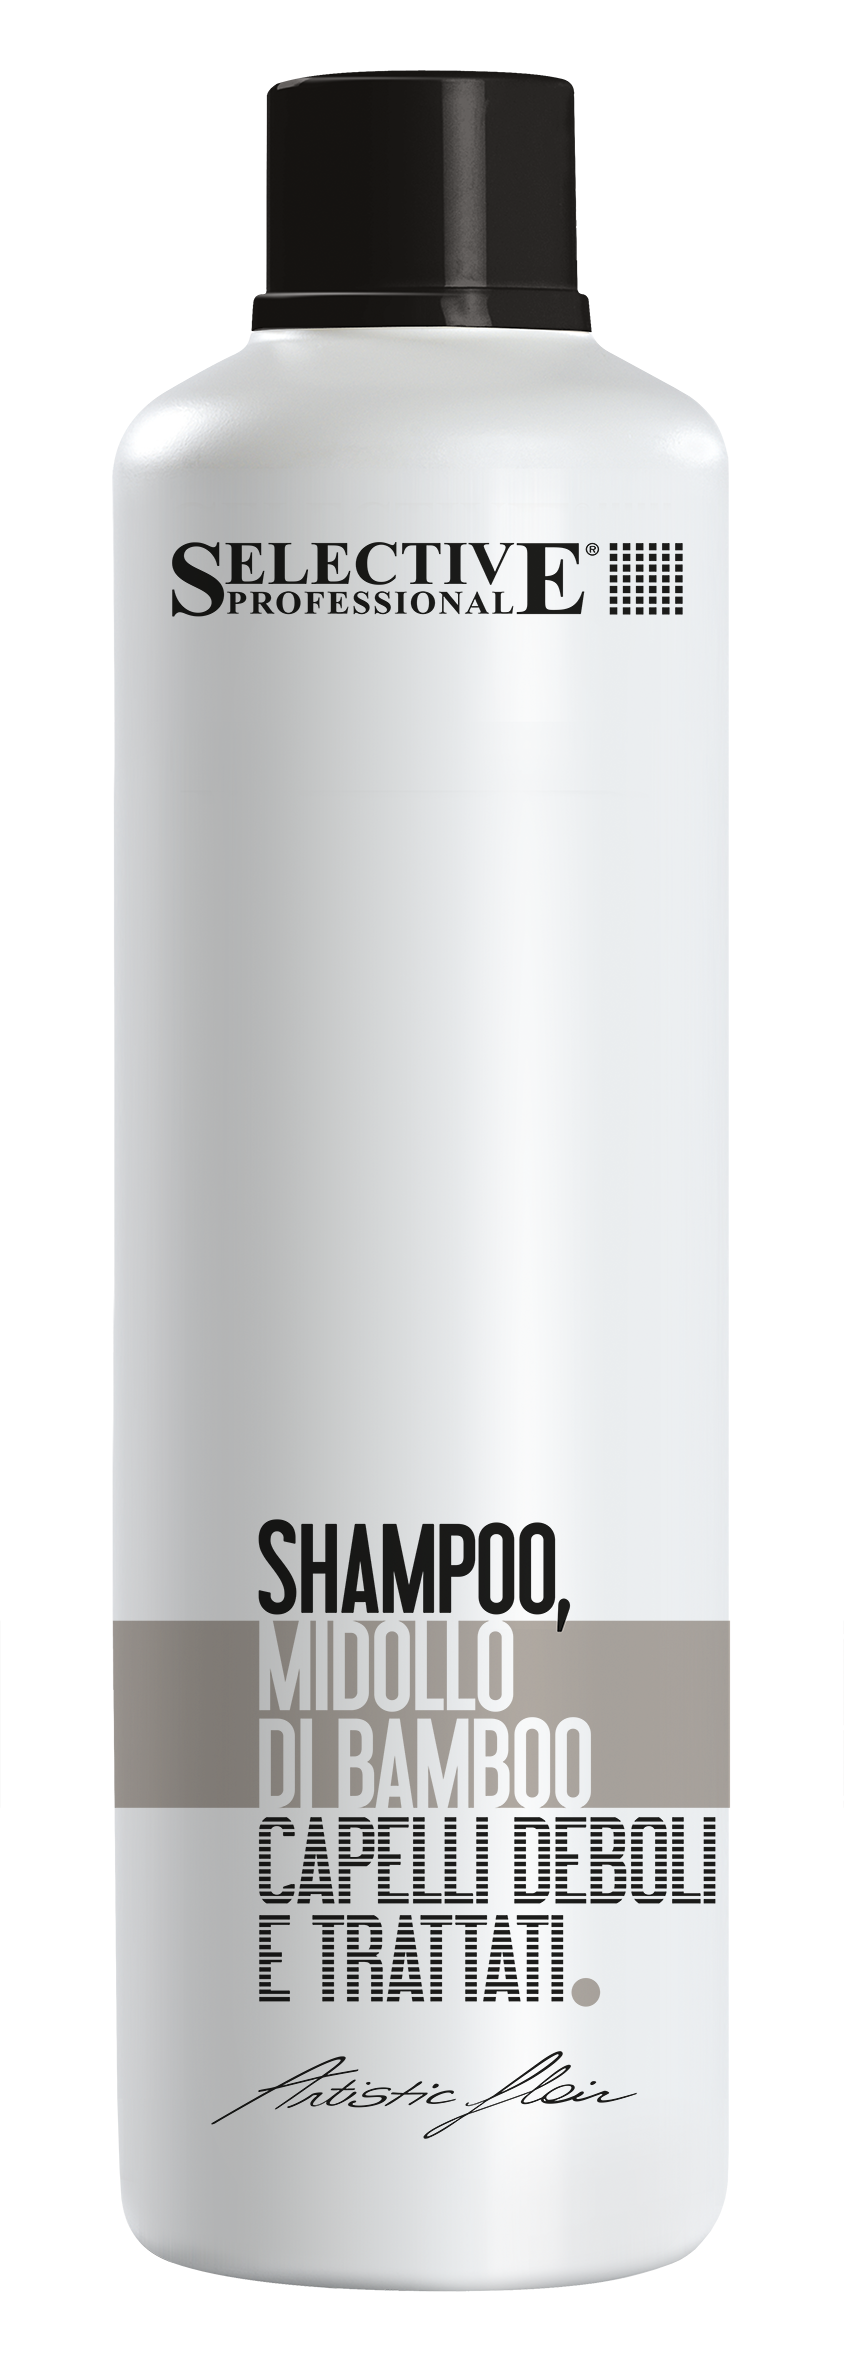 Шампуни для волос:  SELECTIVE PROFESSIONAL -  Шампунь  MIDOLLO DI BAMBOO  для слабых и поврежденных волос (1000 мл)